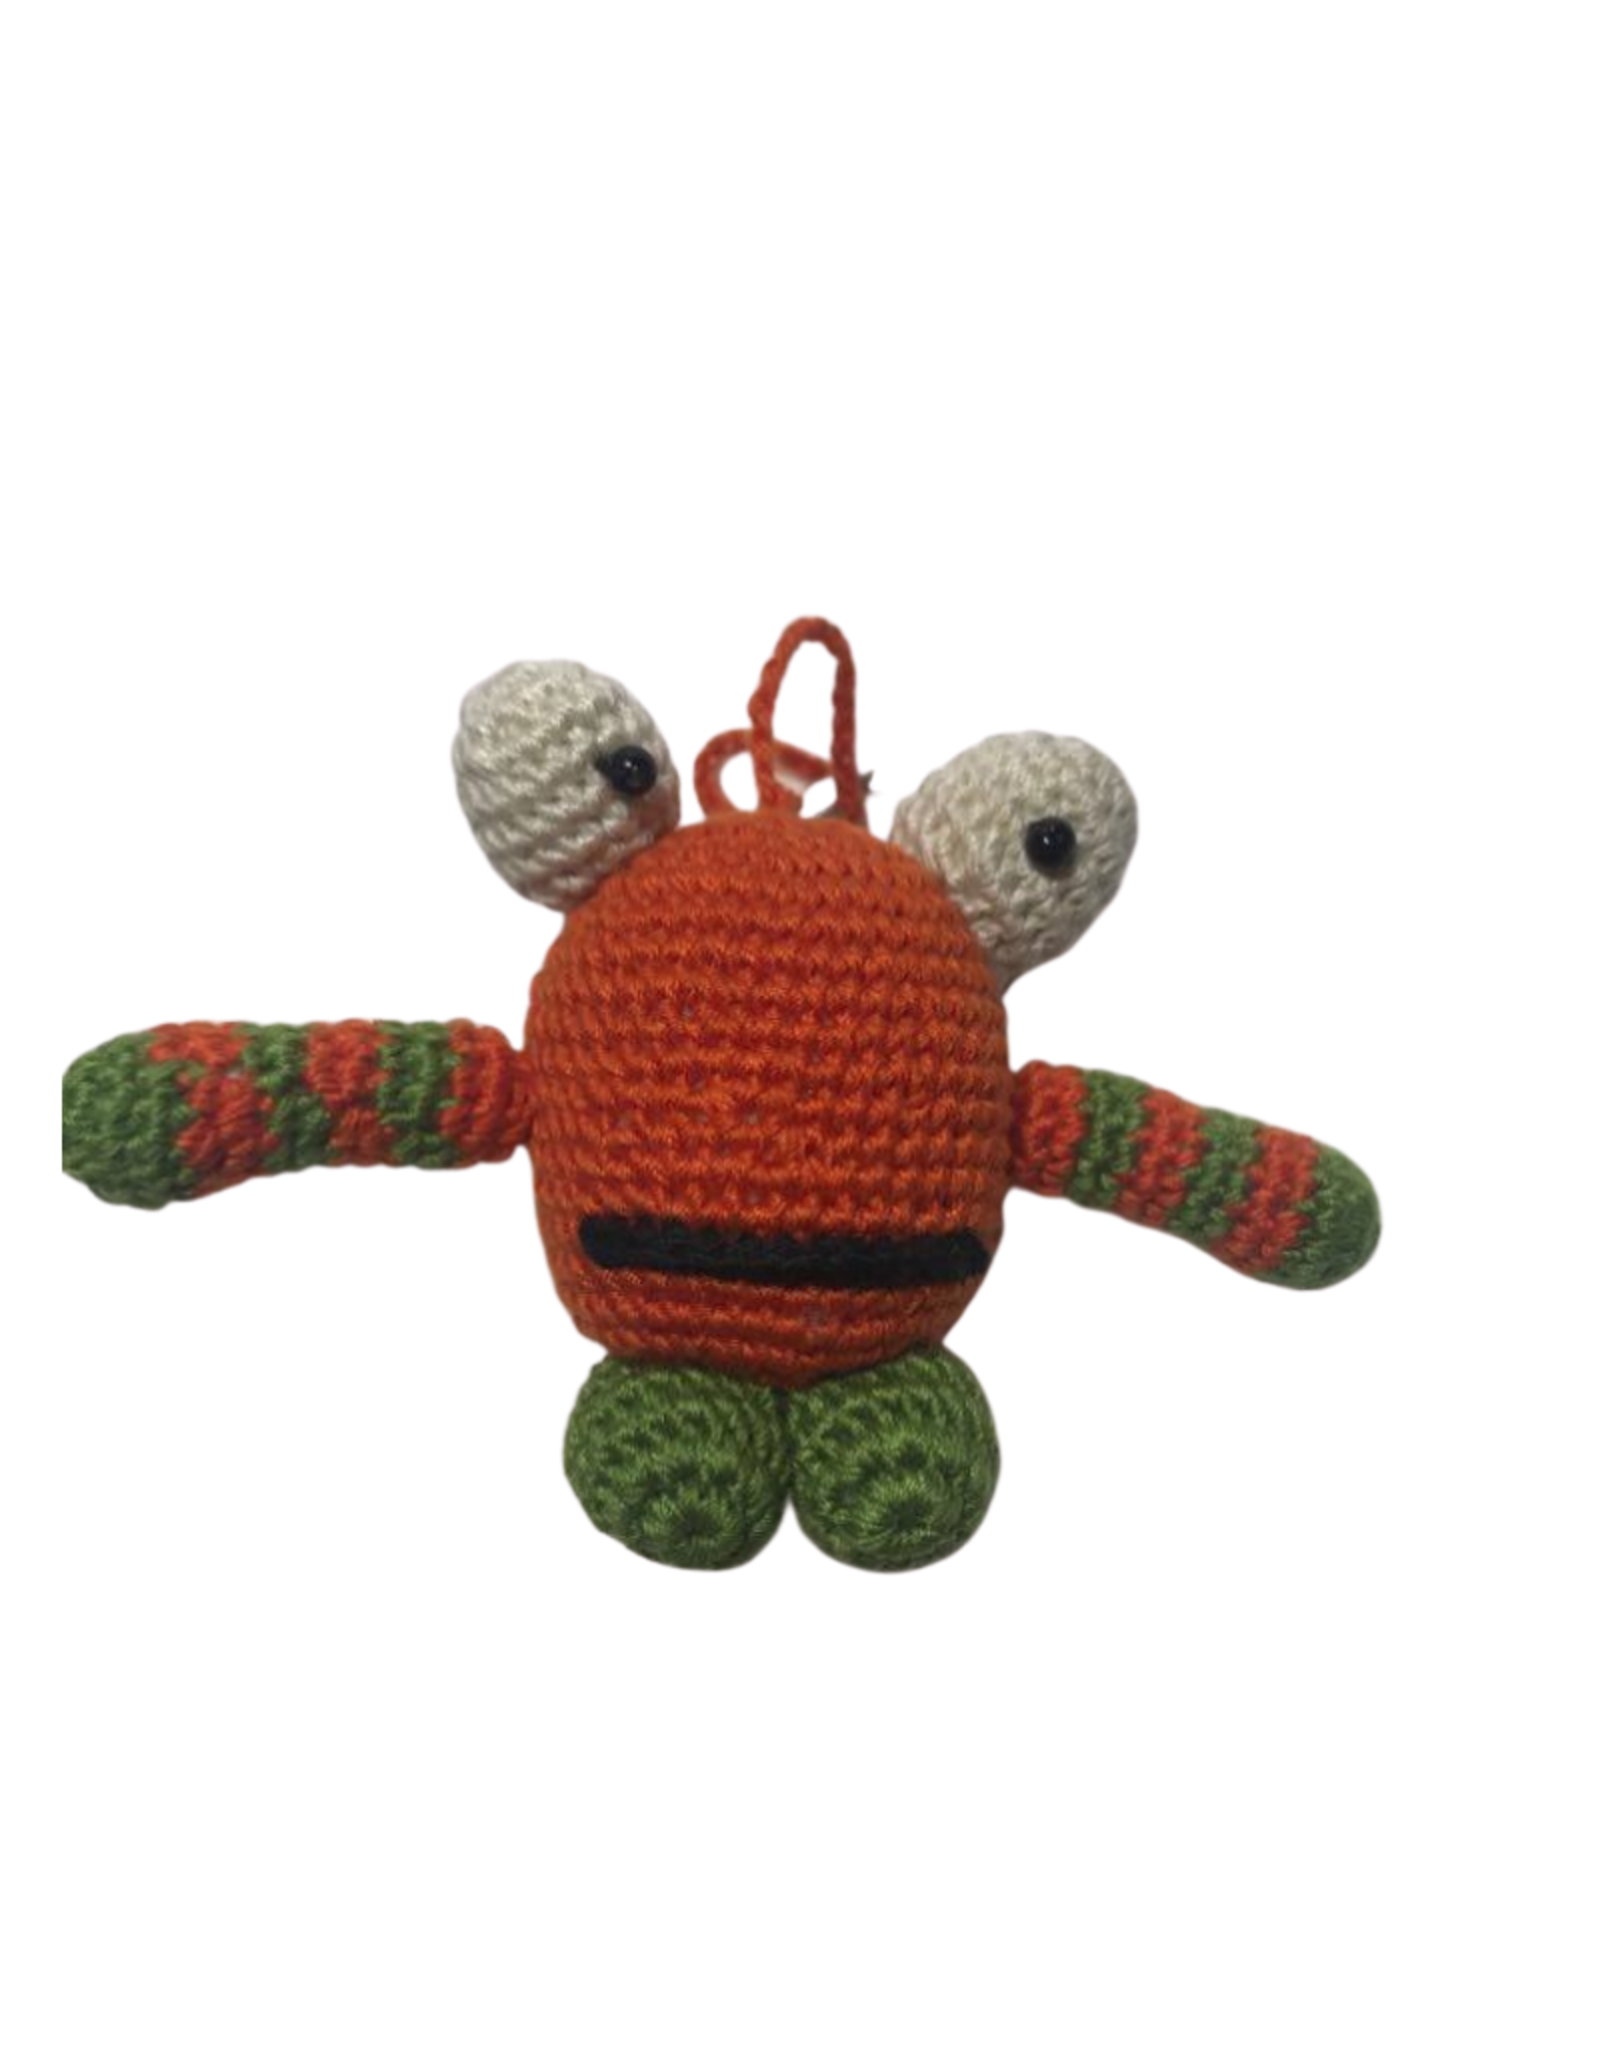 Pebbles Crocheted Monster Zipper Pull - Orange - Vietnam